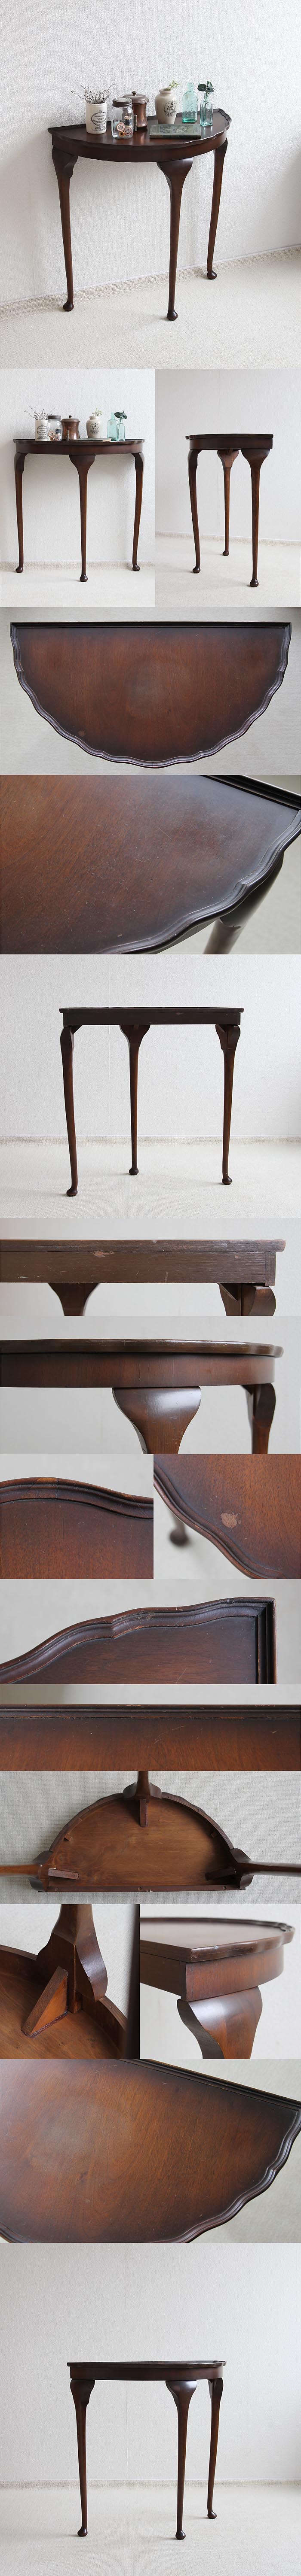 イギリス アンティーク コンソールテーブル 猫脚 クイーンアン 家具「ハーフムーンテーブル」P-204